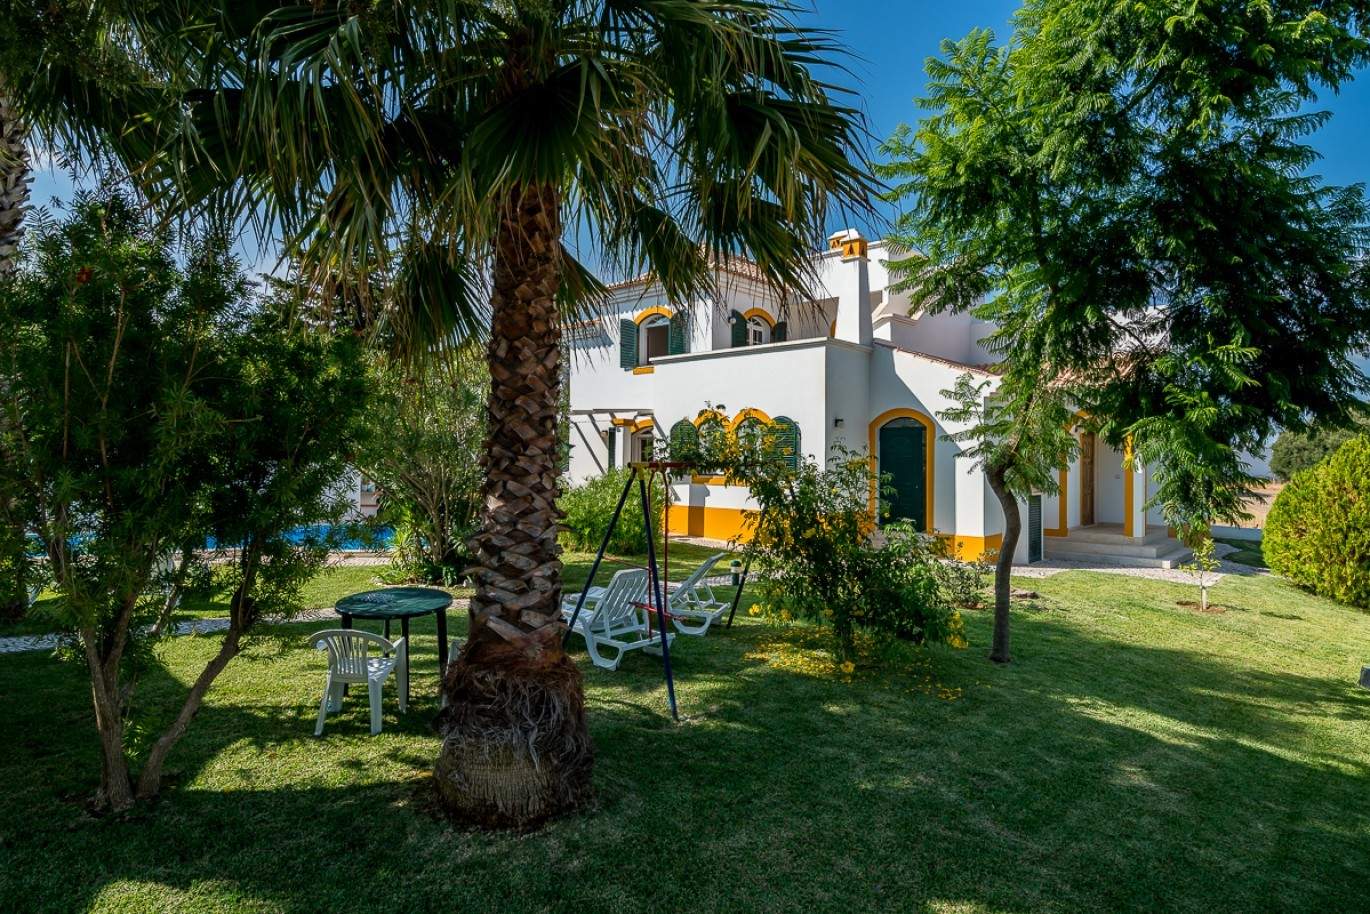 Verkauf Villa in Vila Real de Santo António, Algarve, Portugal_86514